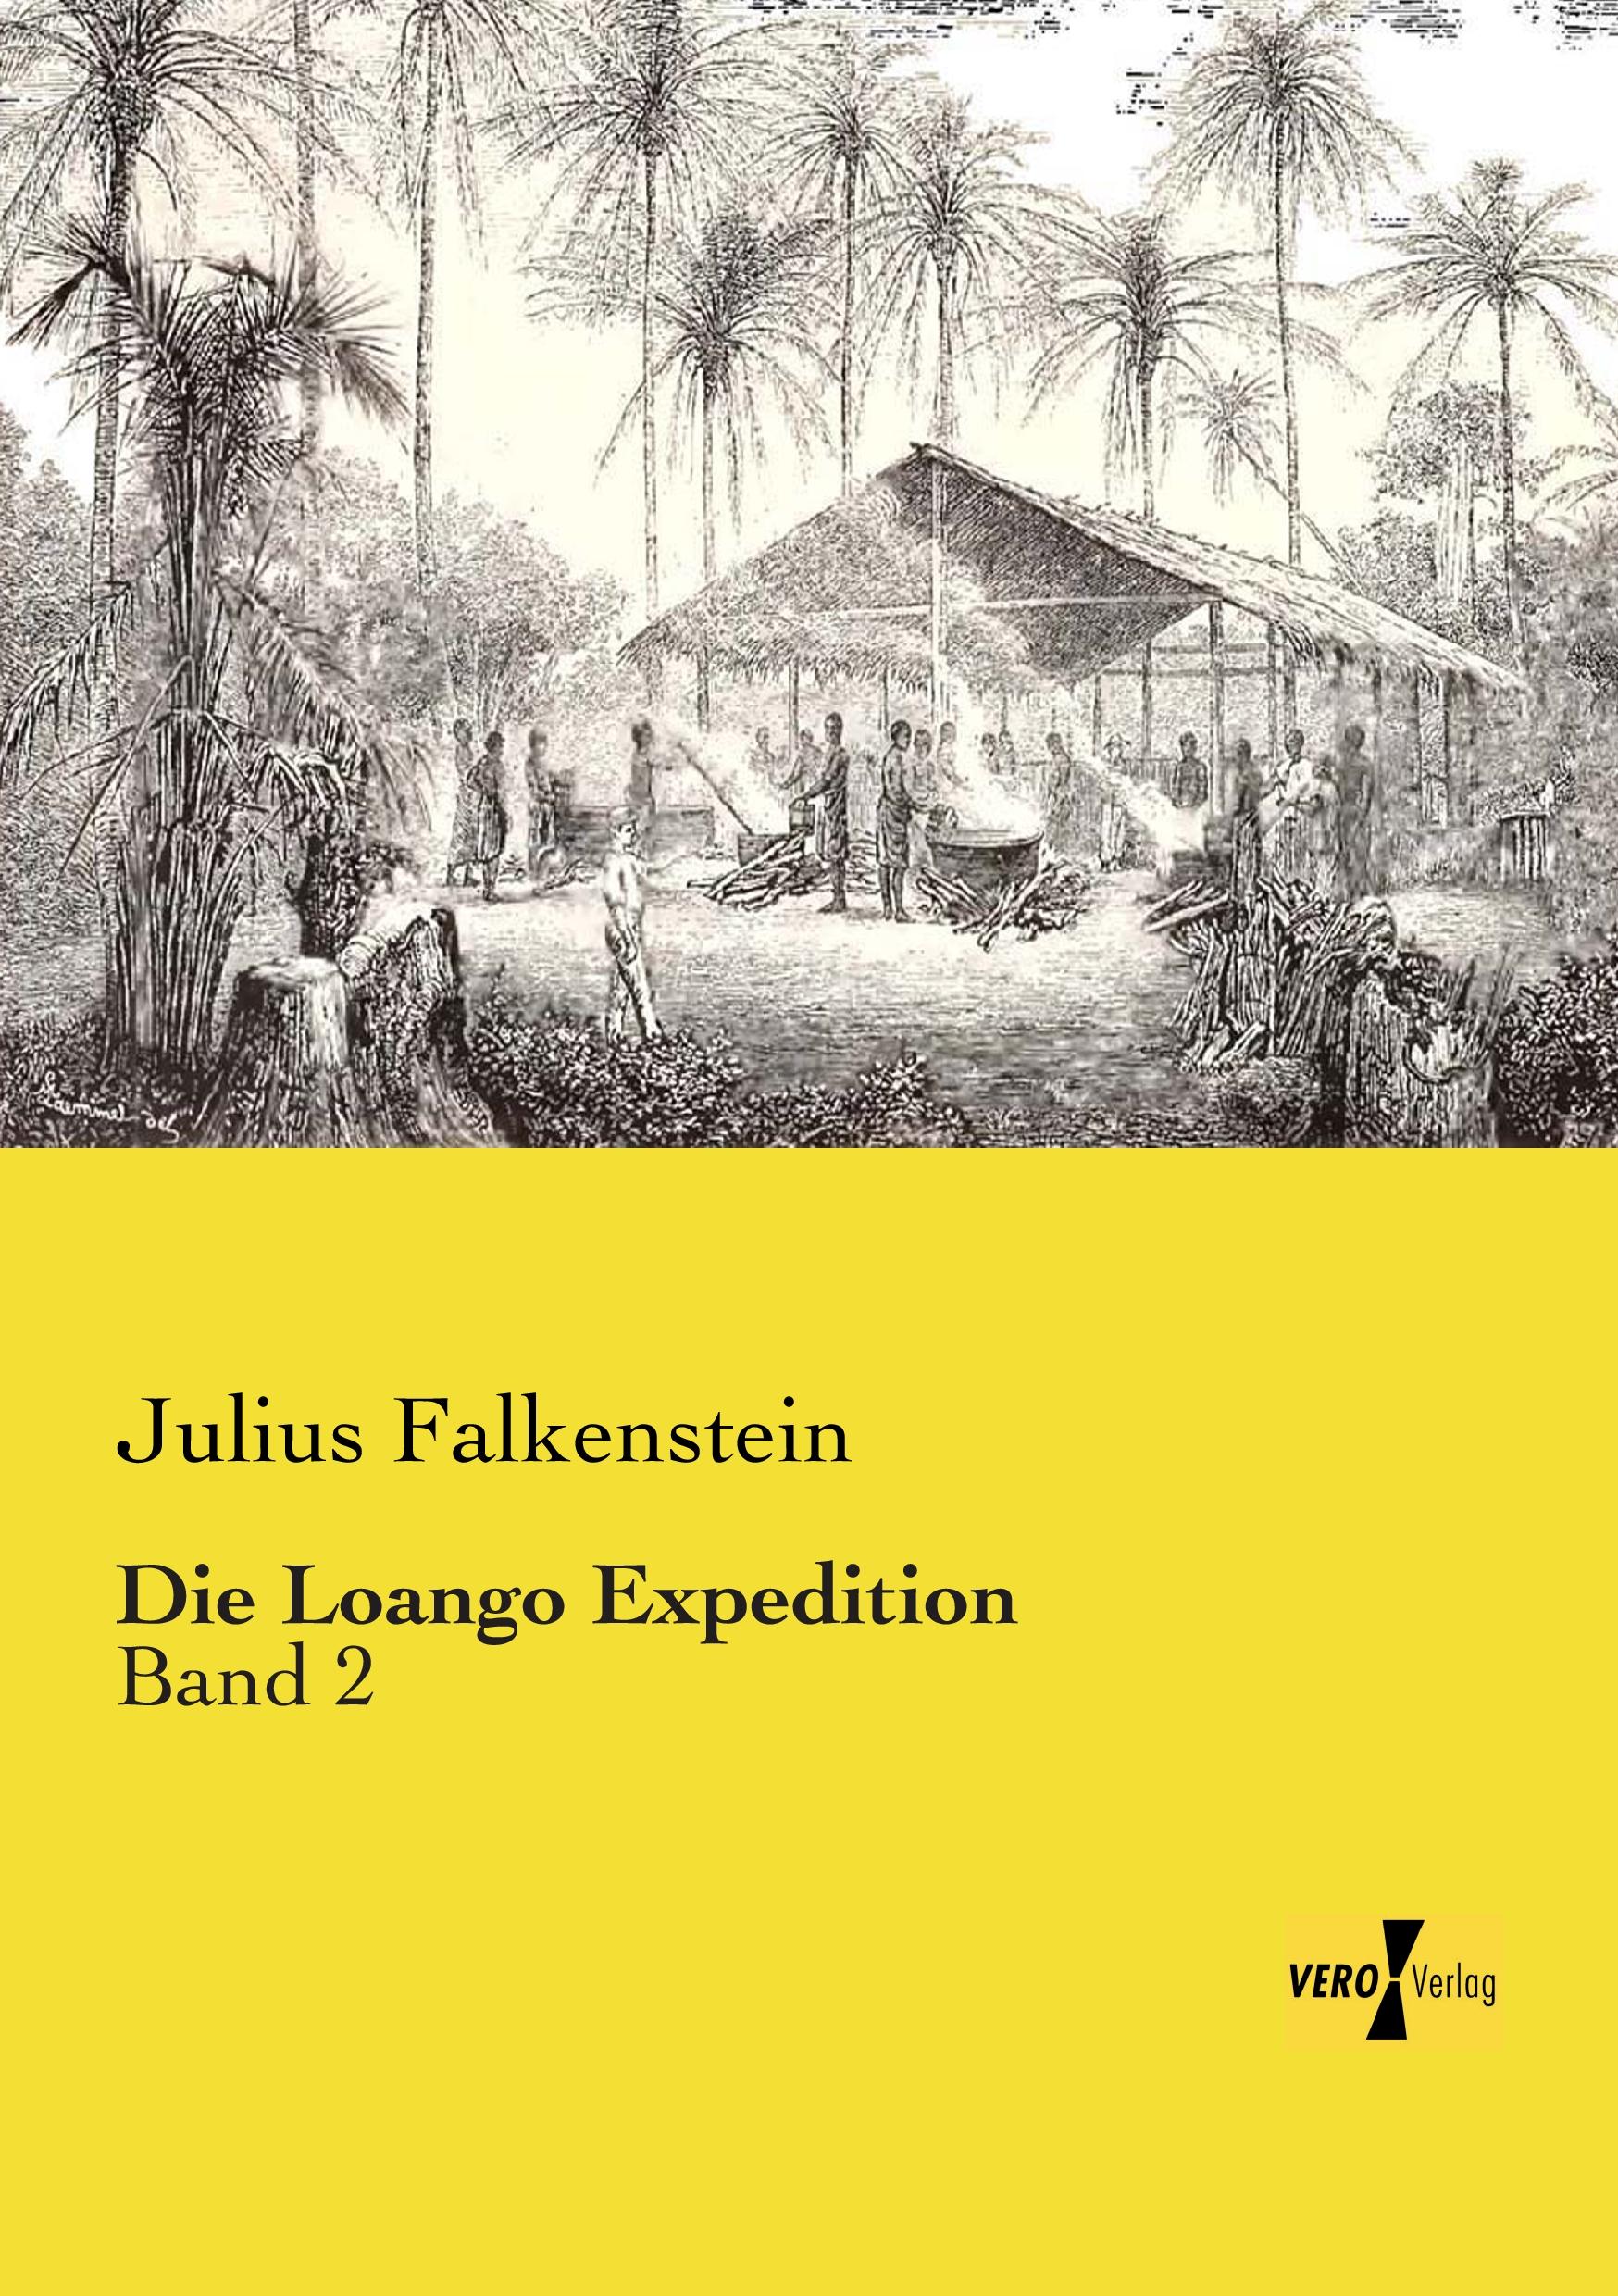 Die Loango Expedition - Falkenstein, Julius